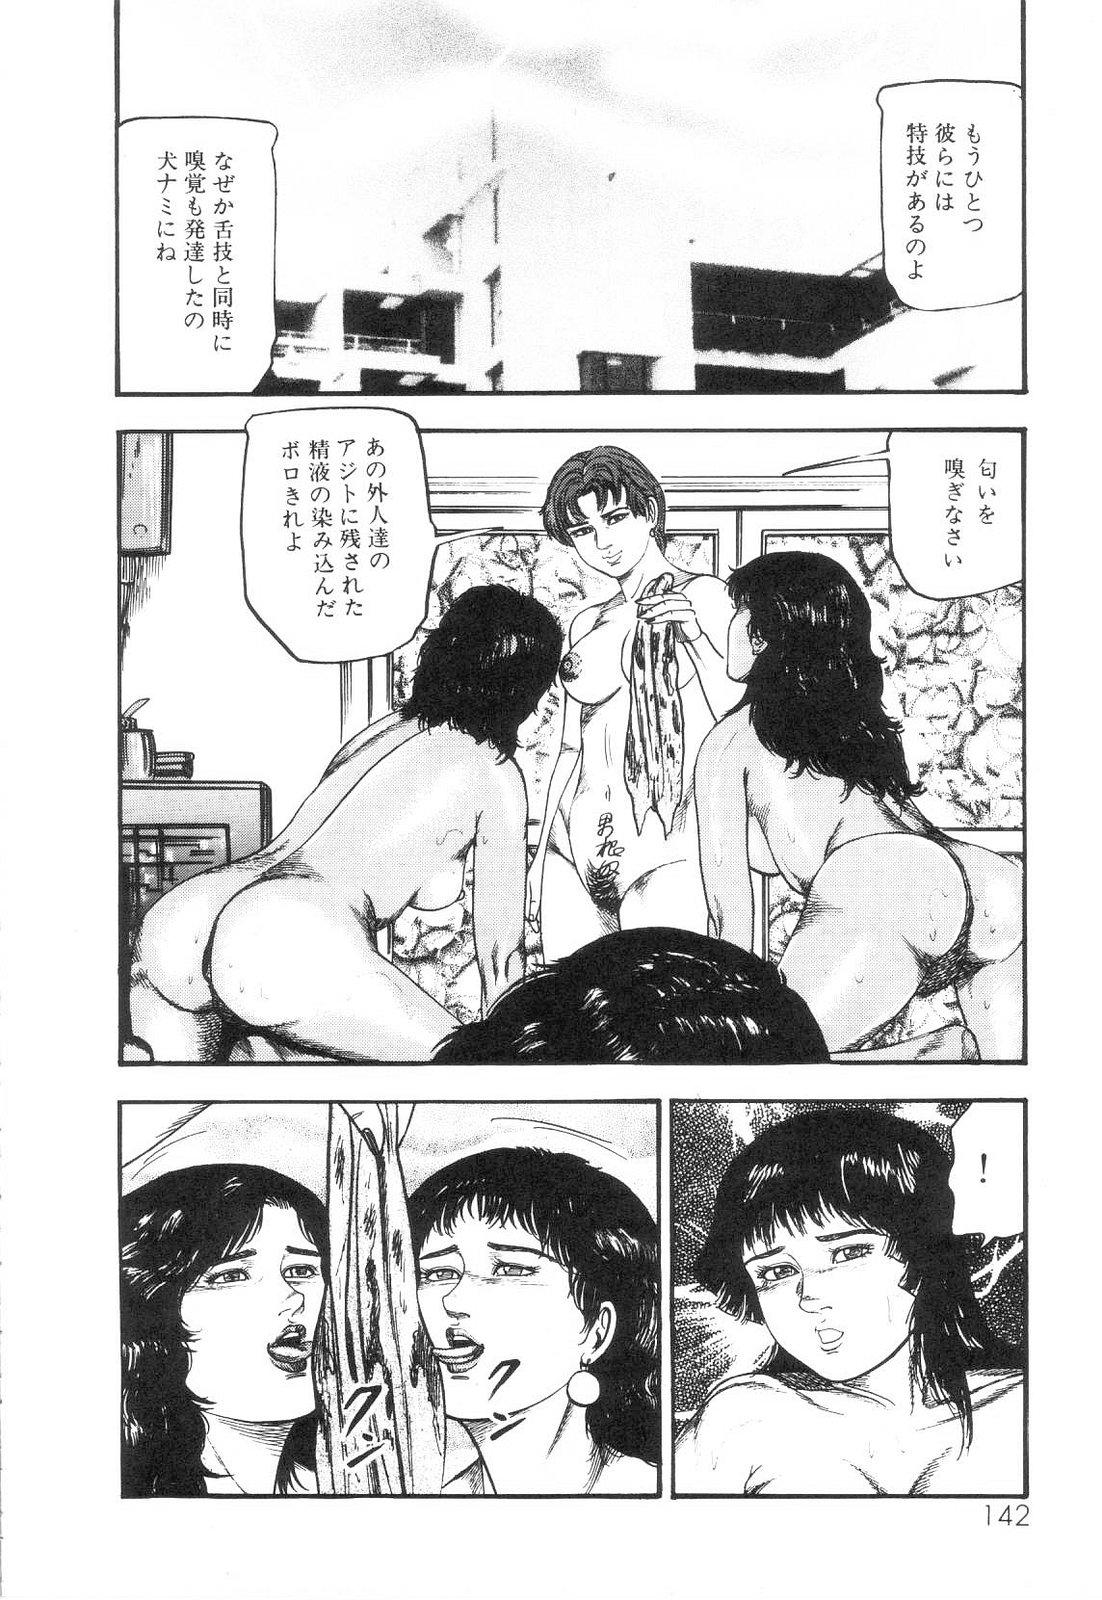 Shiro no Mokushiroku Vol. 6 - Juuai Erika no Shou 143